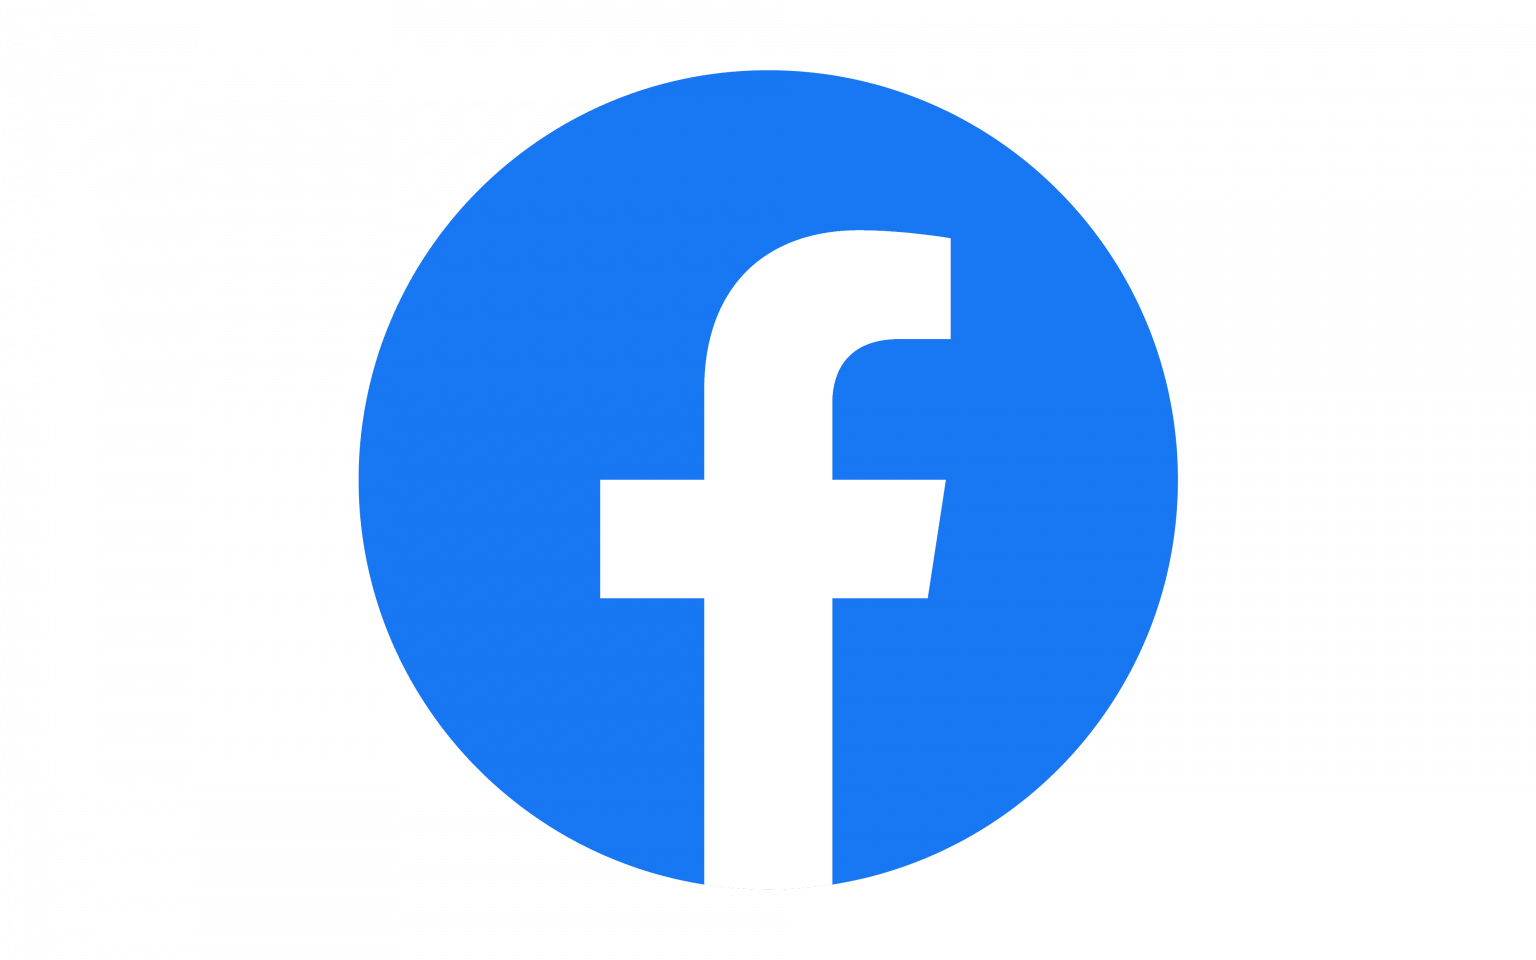 Facebook, Inc.